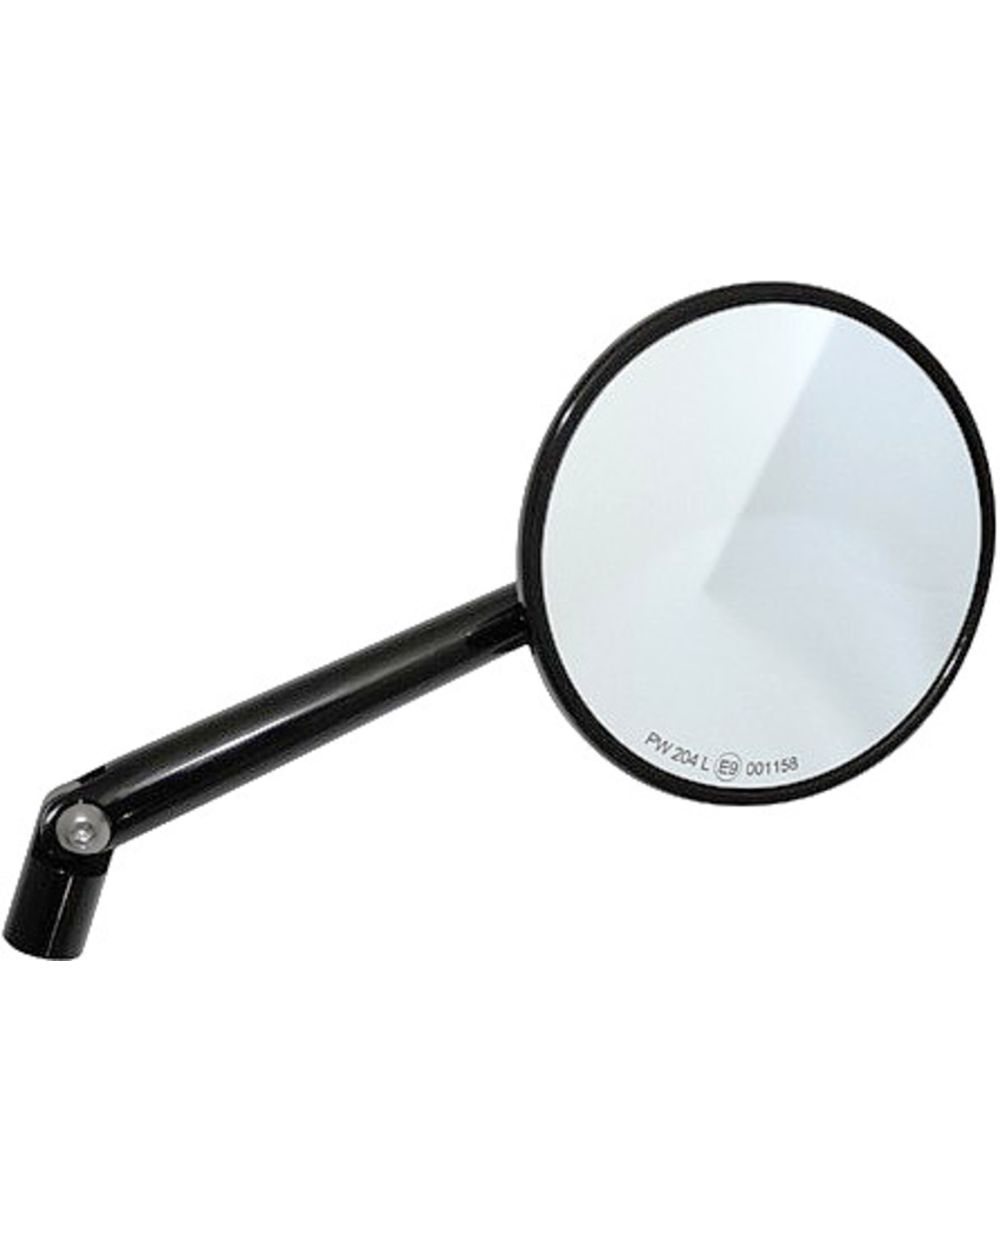 Spiegel rund, d=100mm, Alu schwarz, 1 Stück, 185mm Spiegelarm